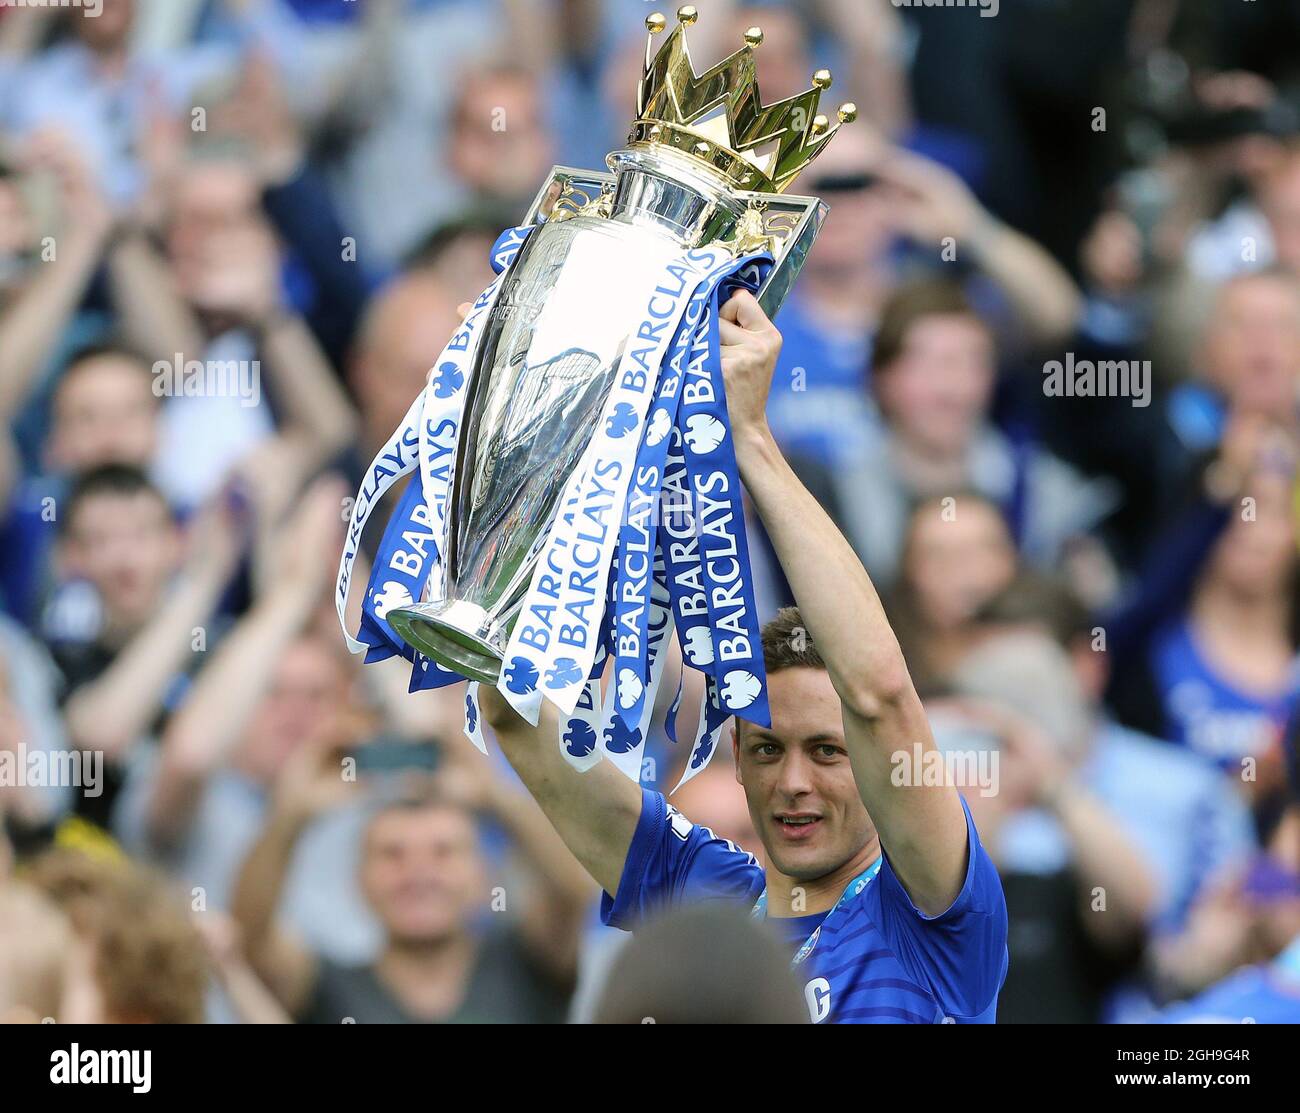 Nemanja Matic de Chelsea célèbre avec le trophée lors du match de la Barclays Premier League entre Chelsea et Sunderland au Stamford Bridge, Londres, le 24 mai 2015. Photo : David Klein. Banque D'Images